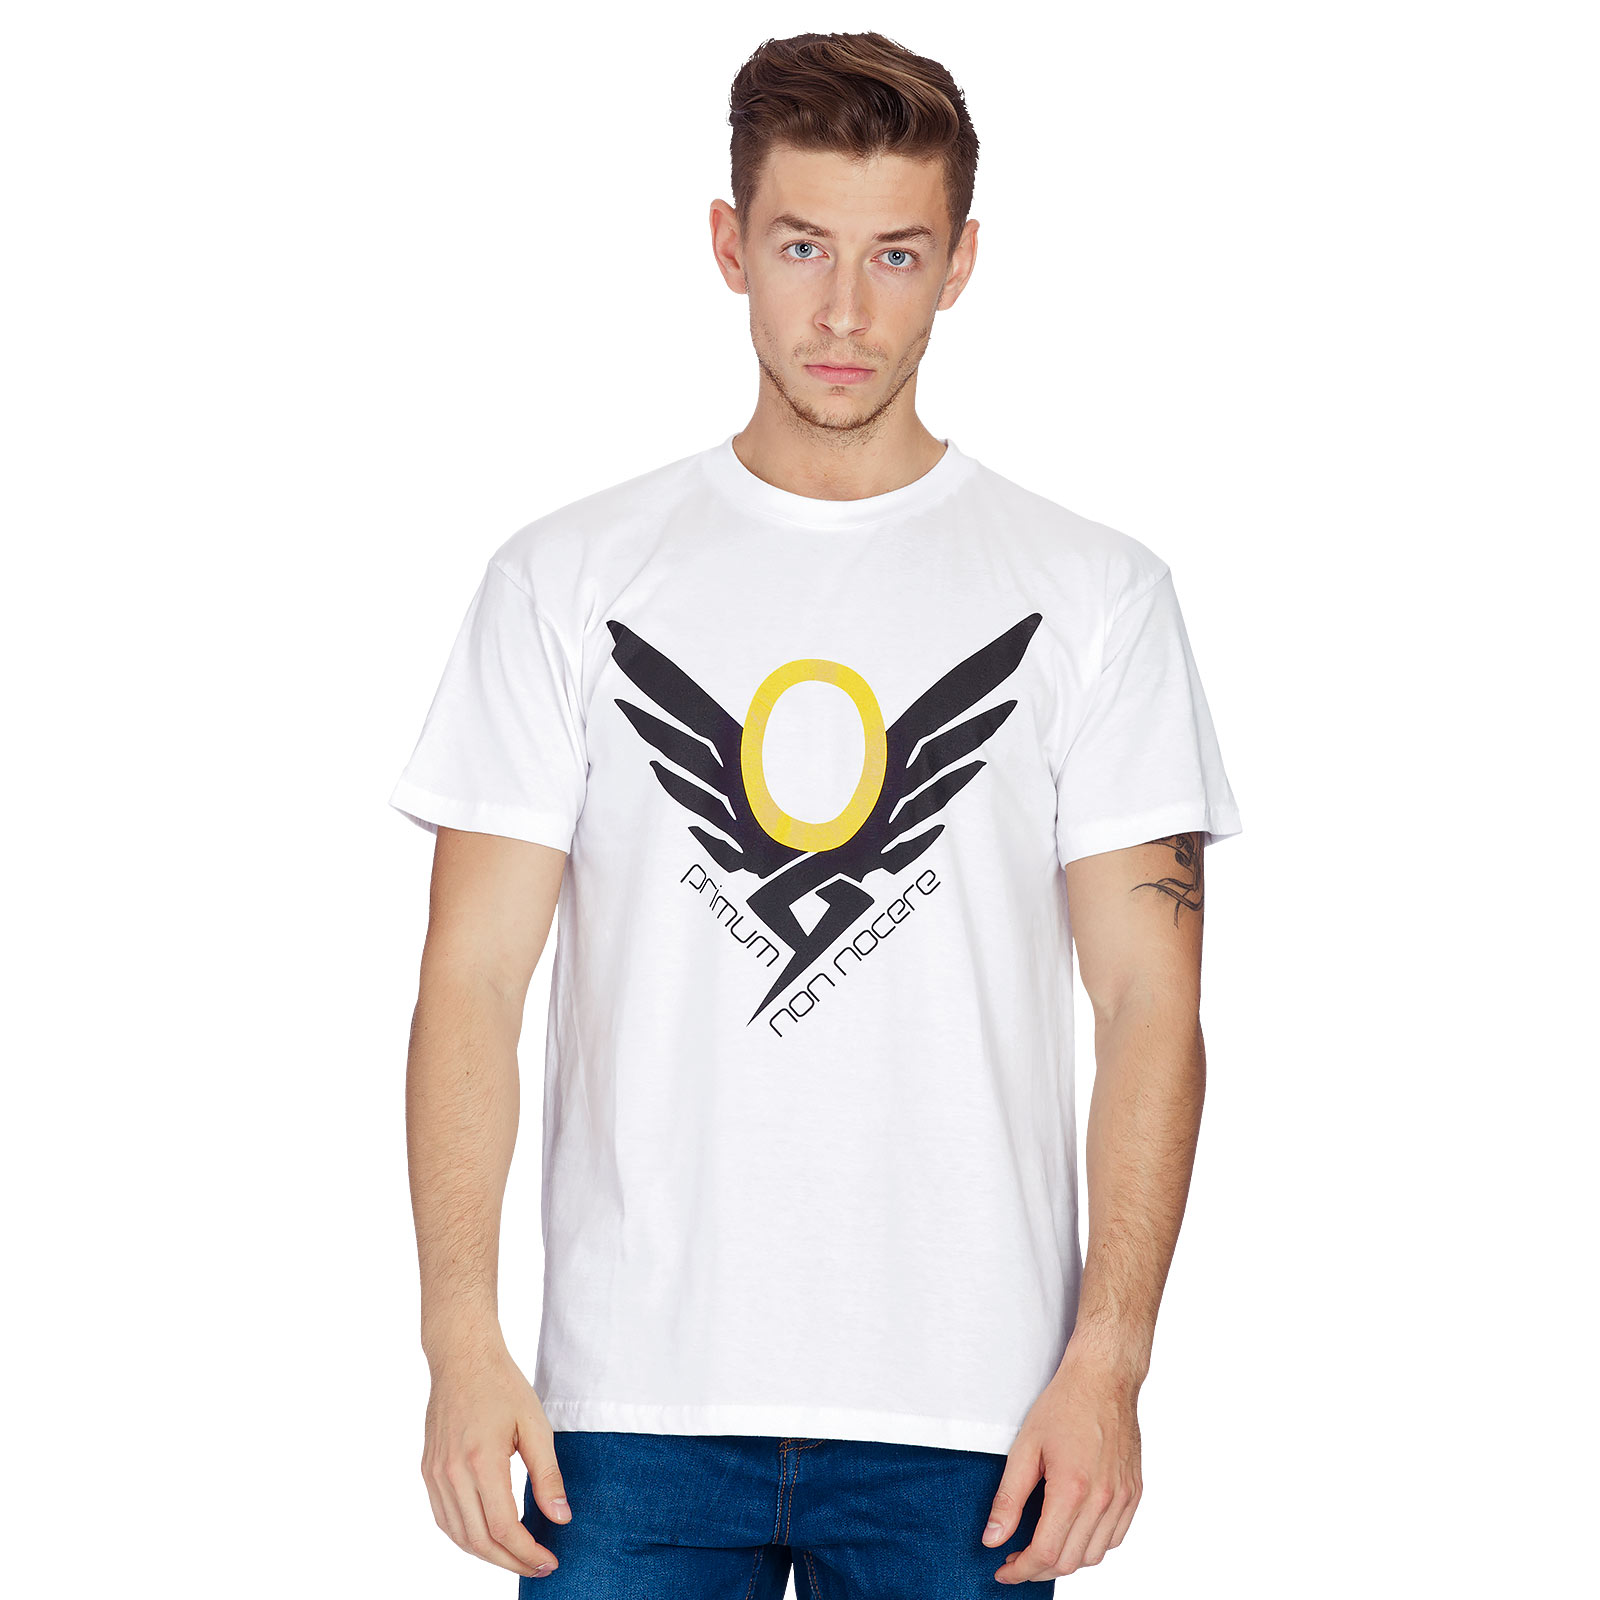 Overwatch - Mercy T-Shirt weiß